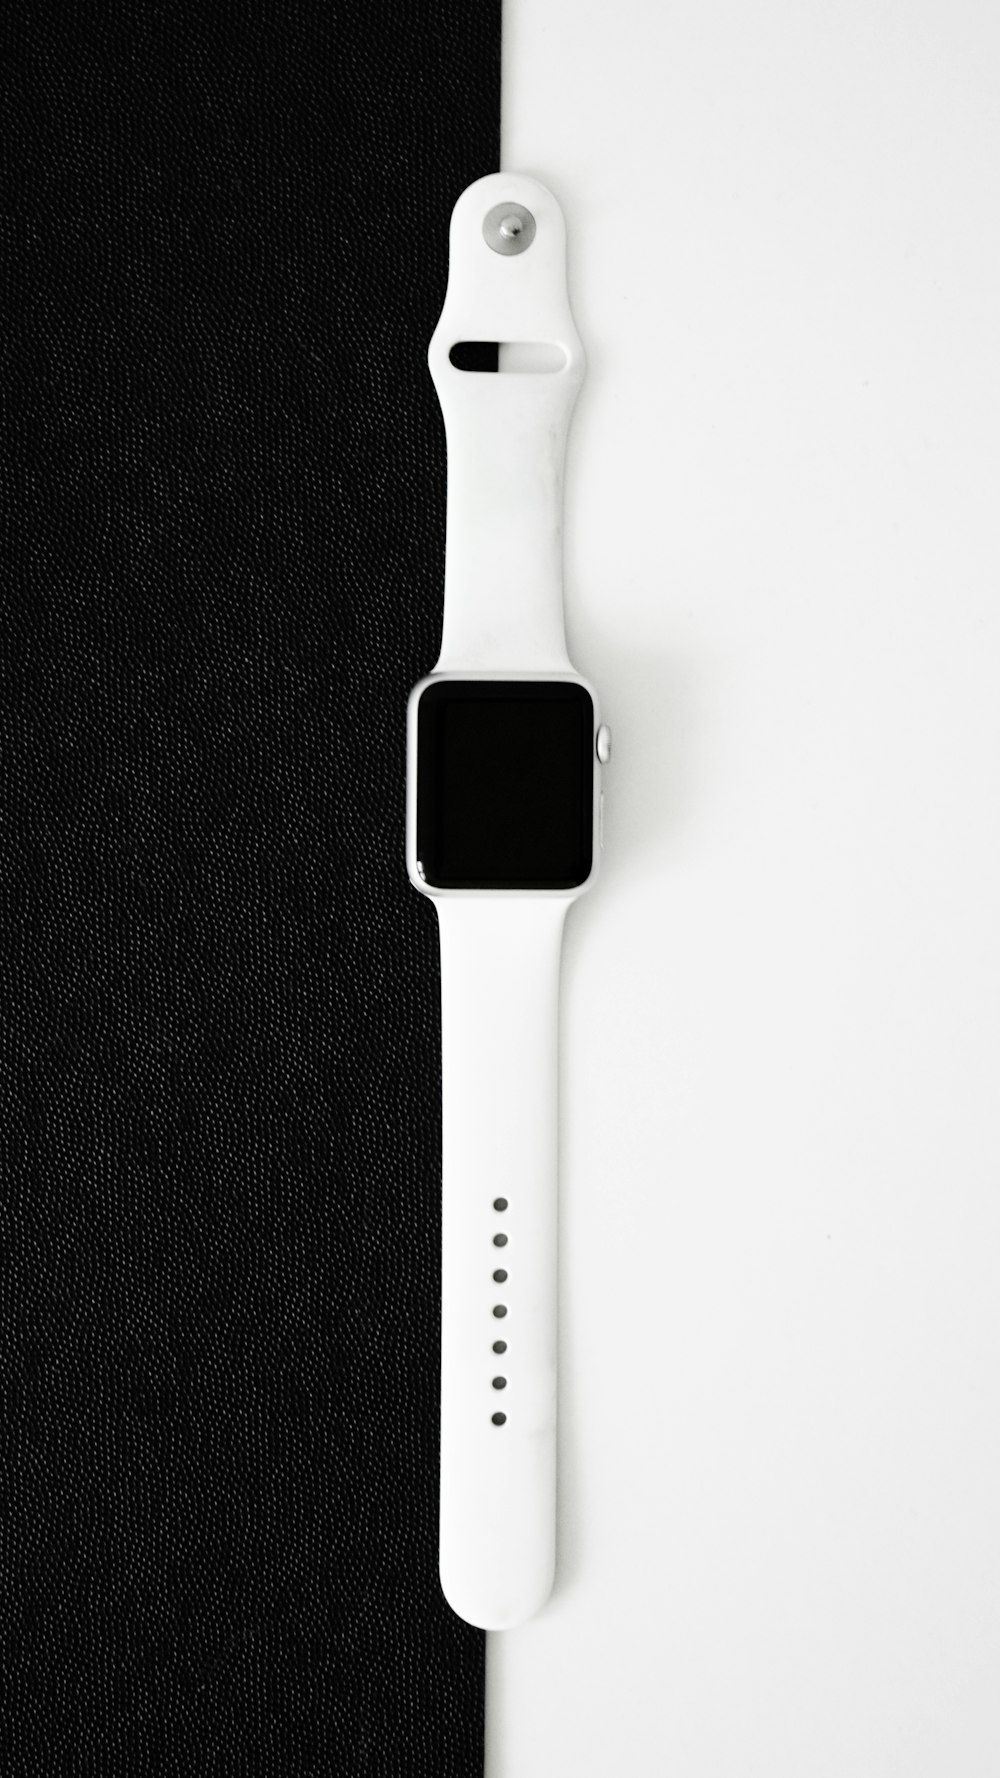 Un Apple Watch encima de un paño negro